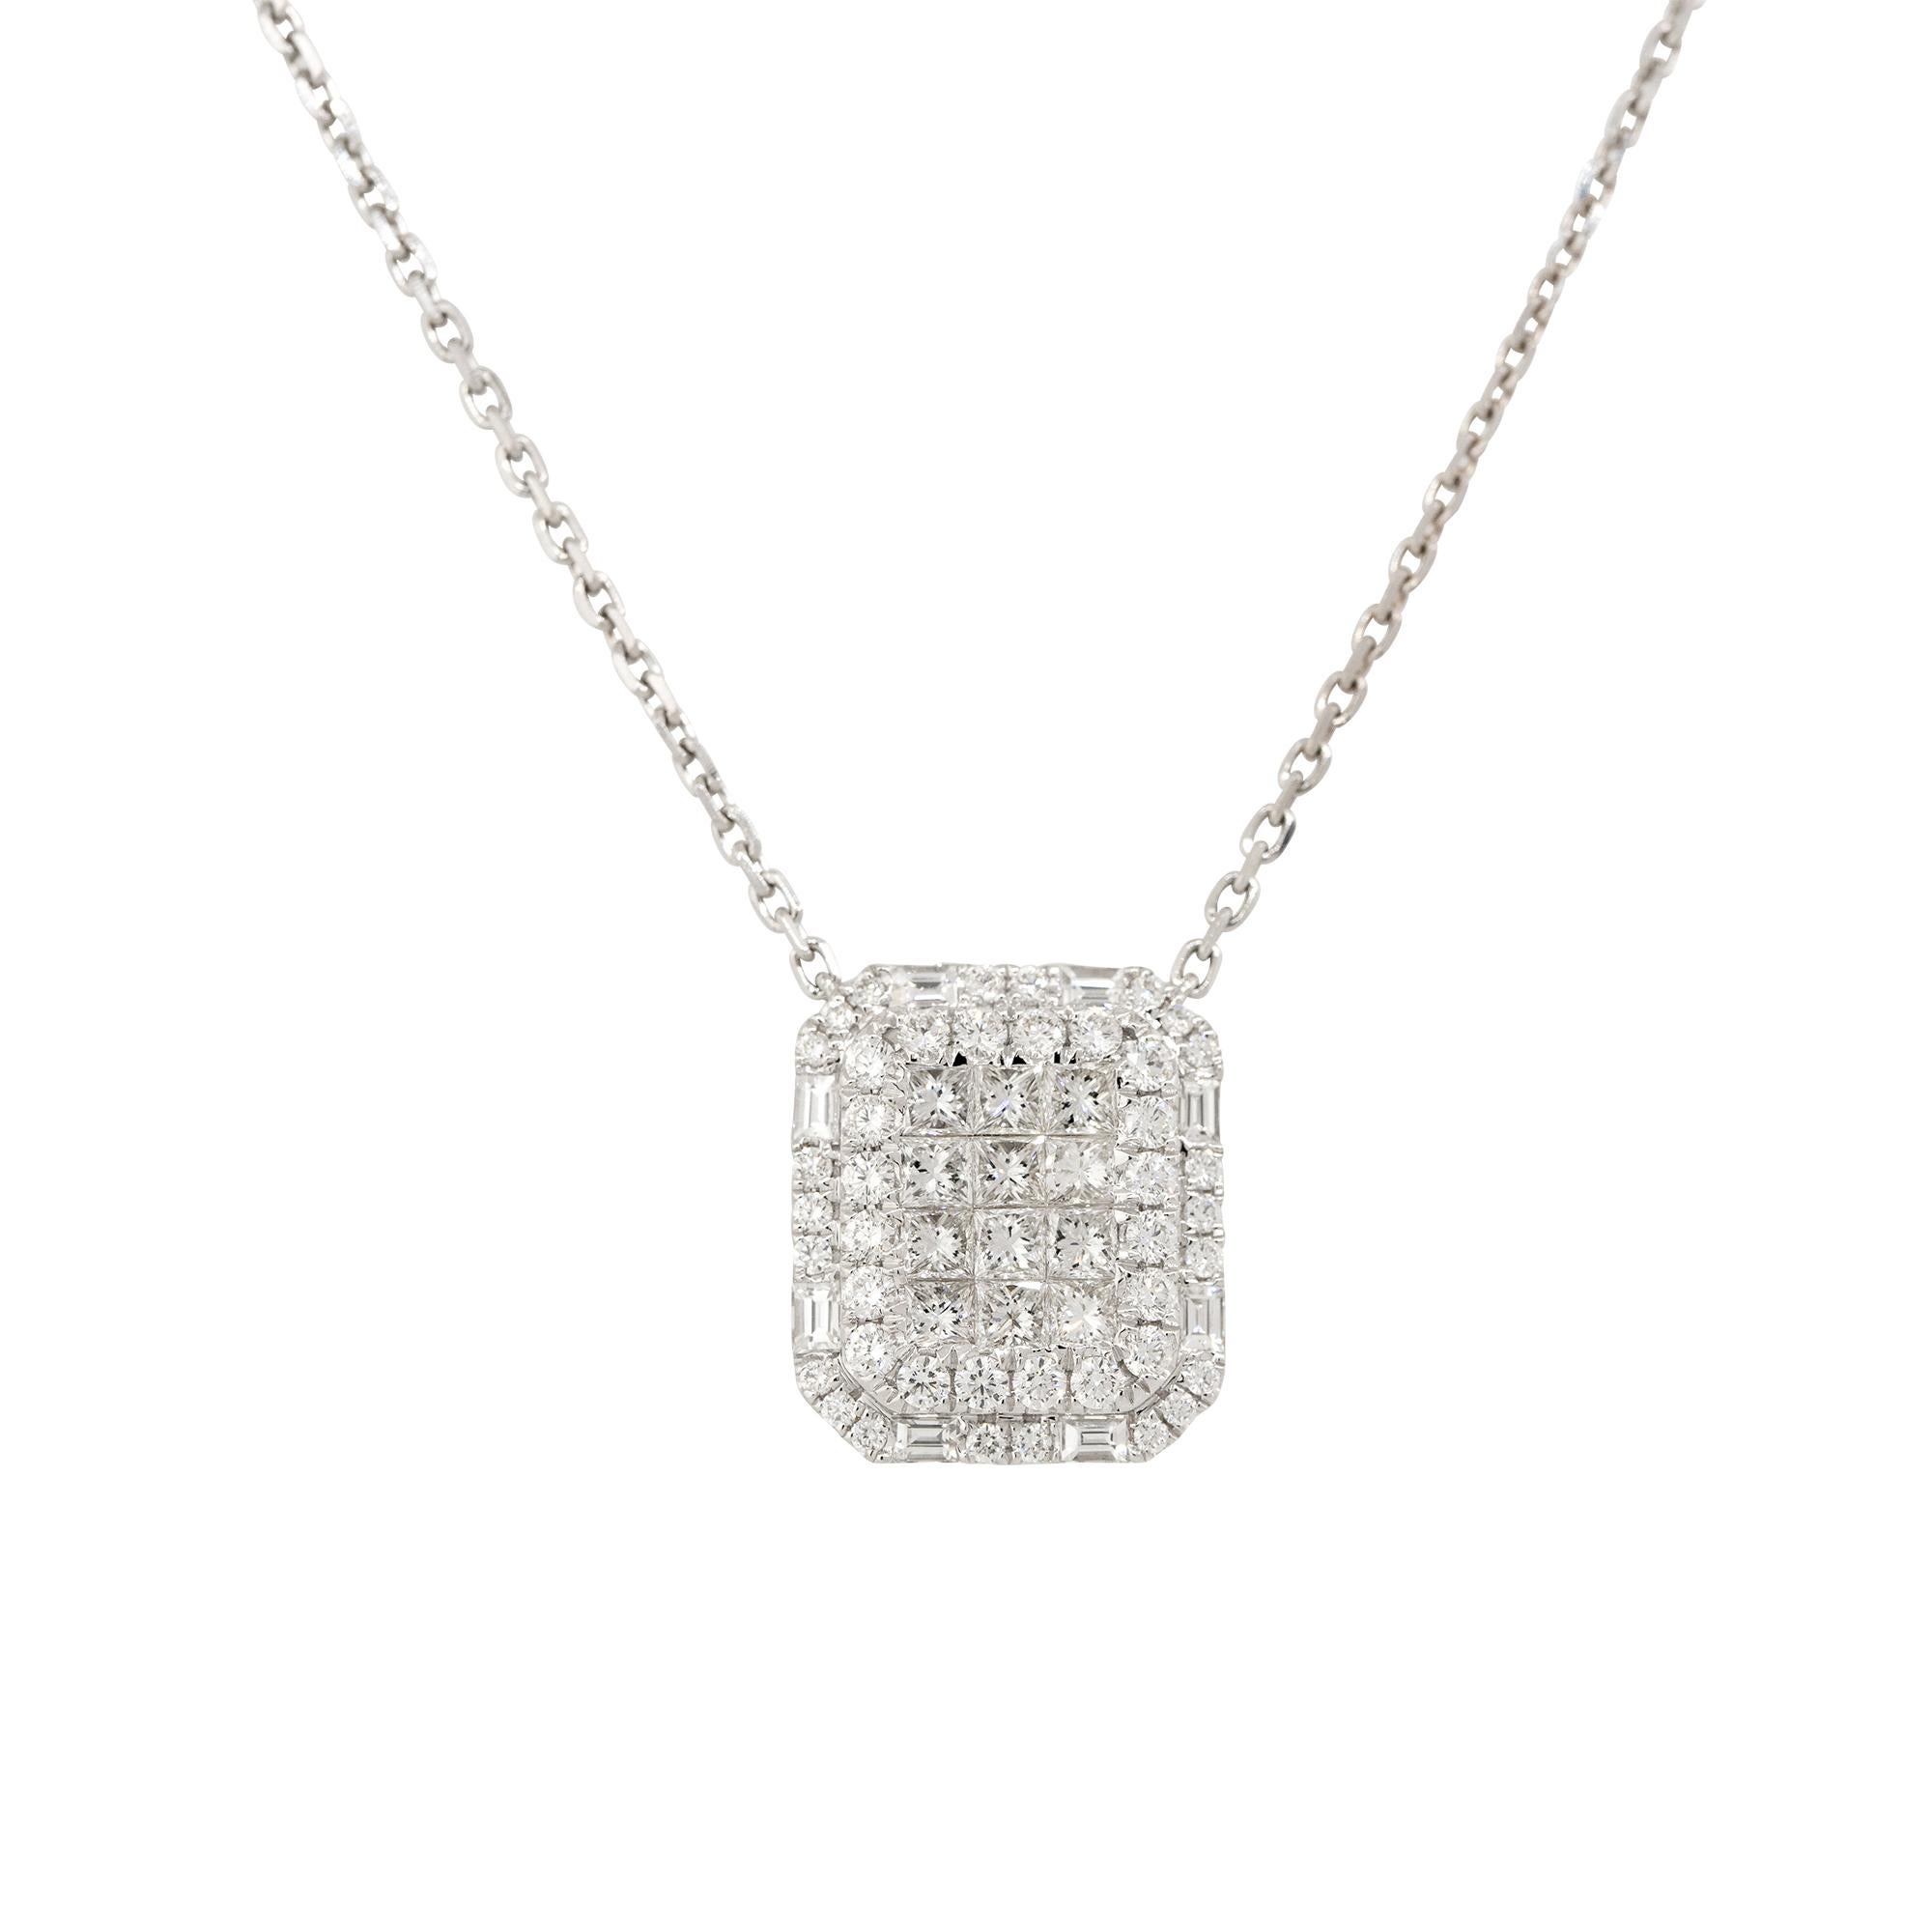 18k Weißgold 2,43ctw Pave Diamant Rechteckige Form Halskette
MATERIAL: 18k Weißgold
Diamant-Details: Es gibt ungefähr 2,43 Karat unsichtbar gefasste Diamanten. In der Mitte des Anhängers befinden sich Diamanten im Prinzessinnenschliff, umgeben von